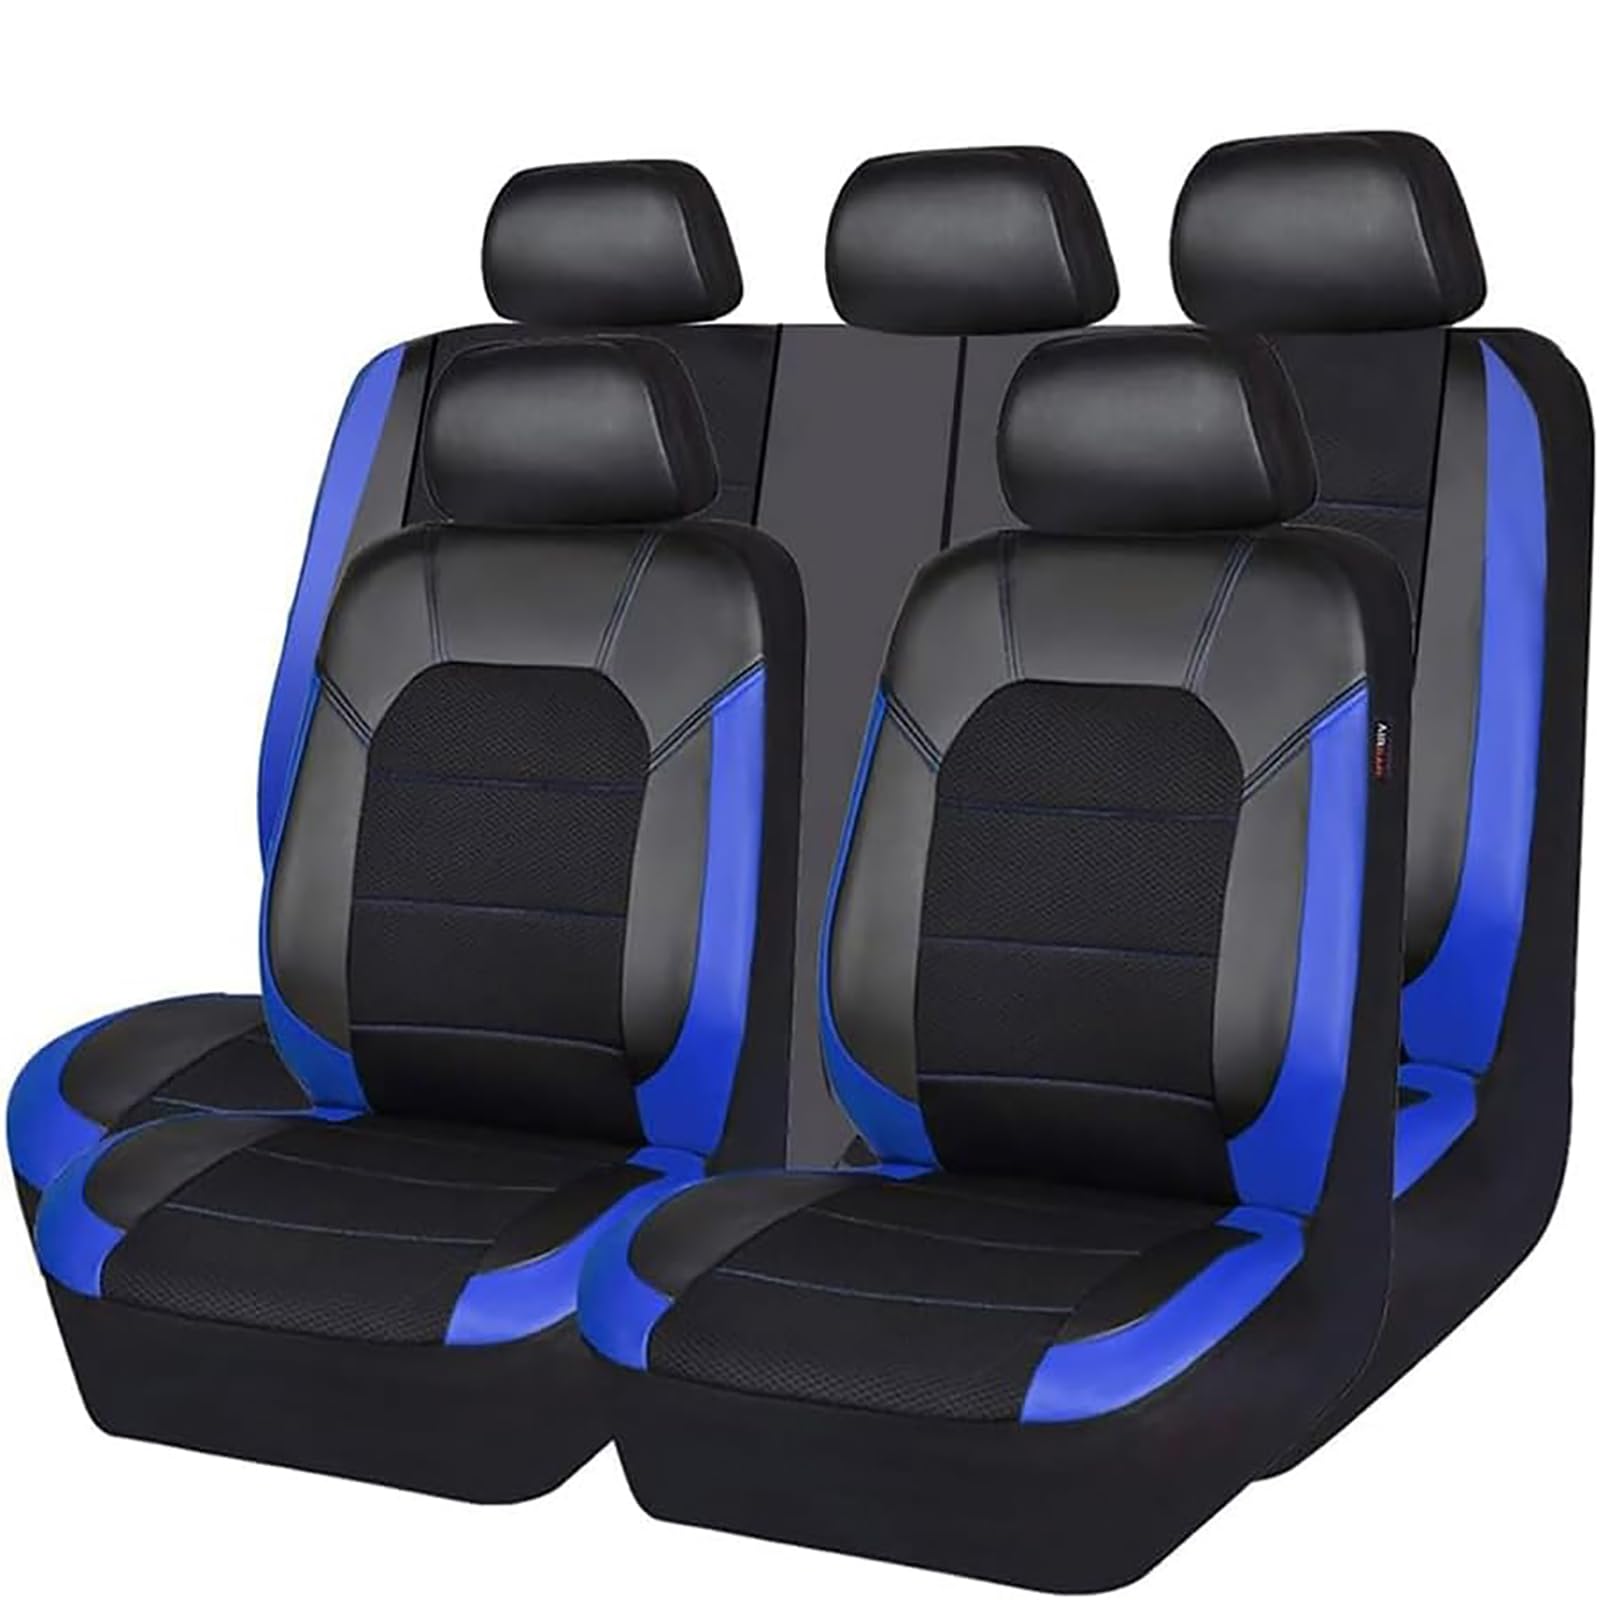 EYHQKRTR Auto Leder Sitzkissen Für Mazda CX-5 2017-2022, 5 Sitzer Full Set SitzbezüGe Schonbezug Vorne Rückbank Sitzschutz Compatible Airbag Innenraum Zubehör,C/Blue von EYHQKRTR